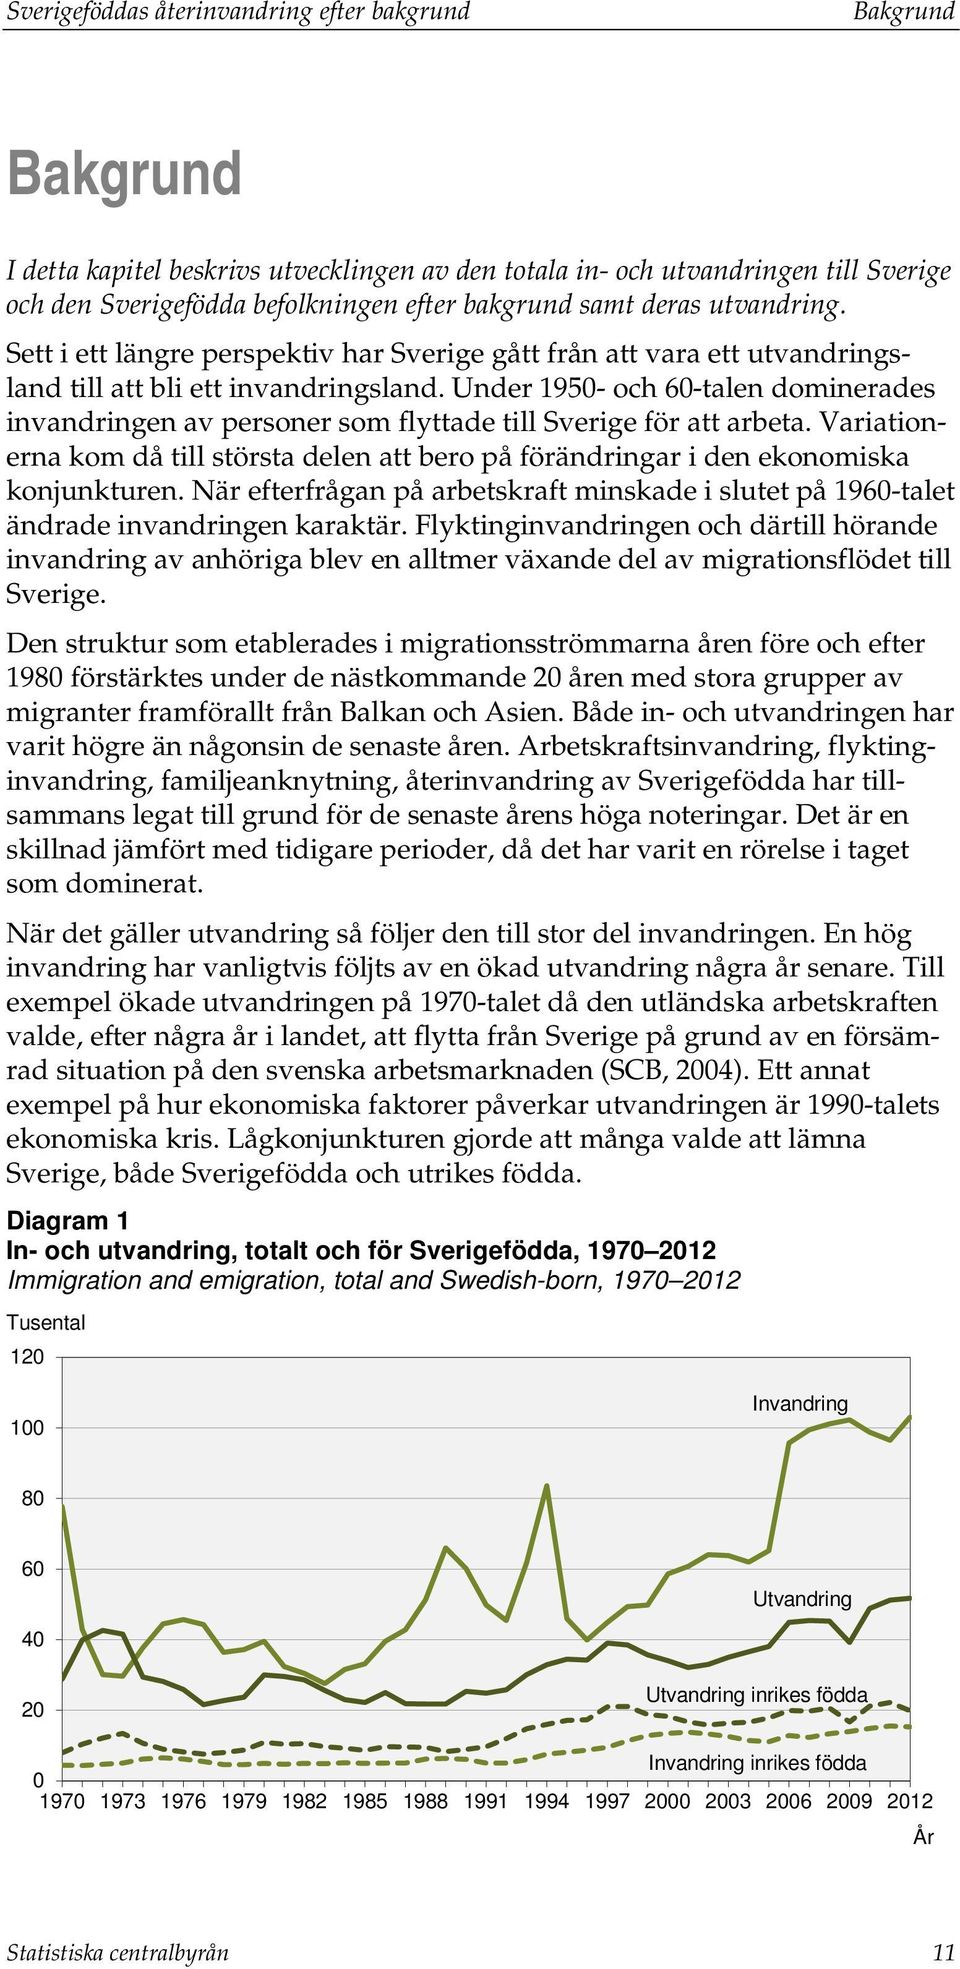 Under 1950- och 60-talen dominerades invandringen av personer som flyttade till Sverige för att arbeta. Variationerna kom då till största delen att bero på förändringar i den ekonomiska konjunkturen.